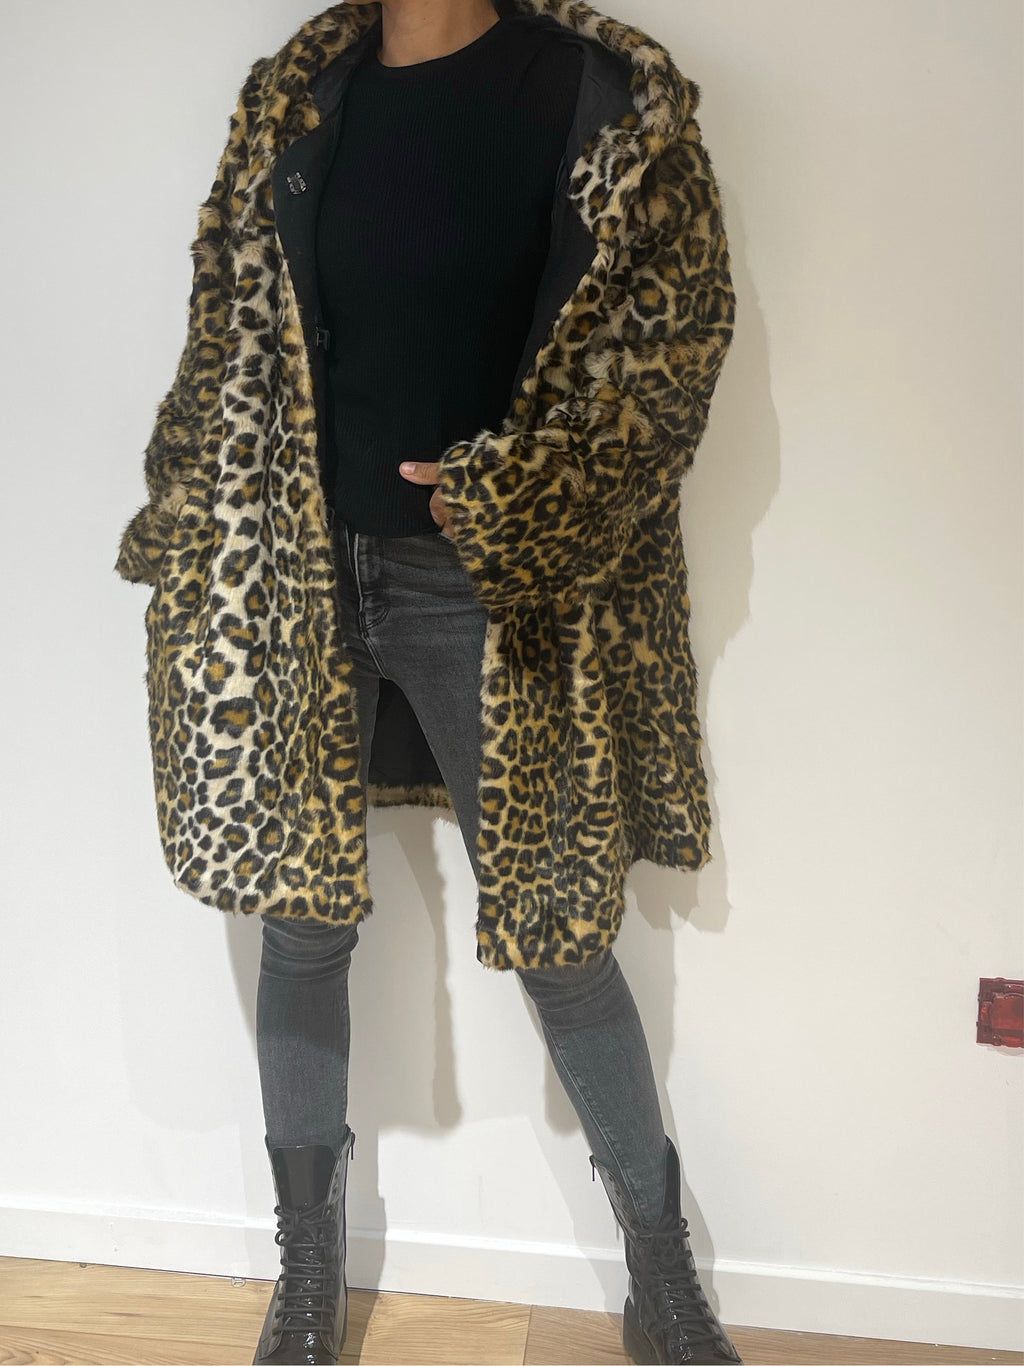 Femme portant un manteau léopard à la mode